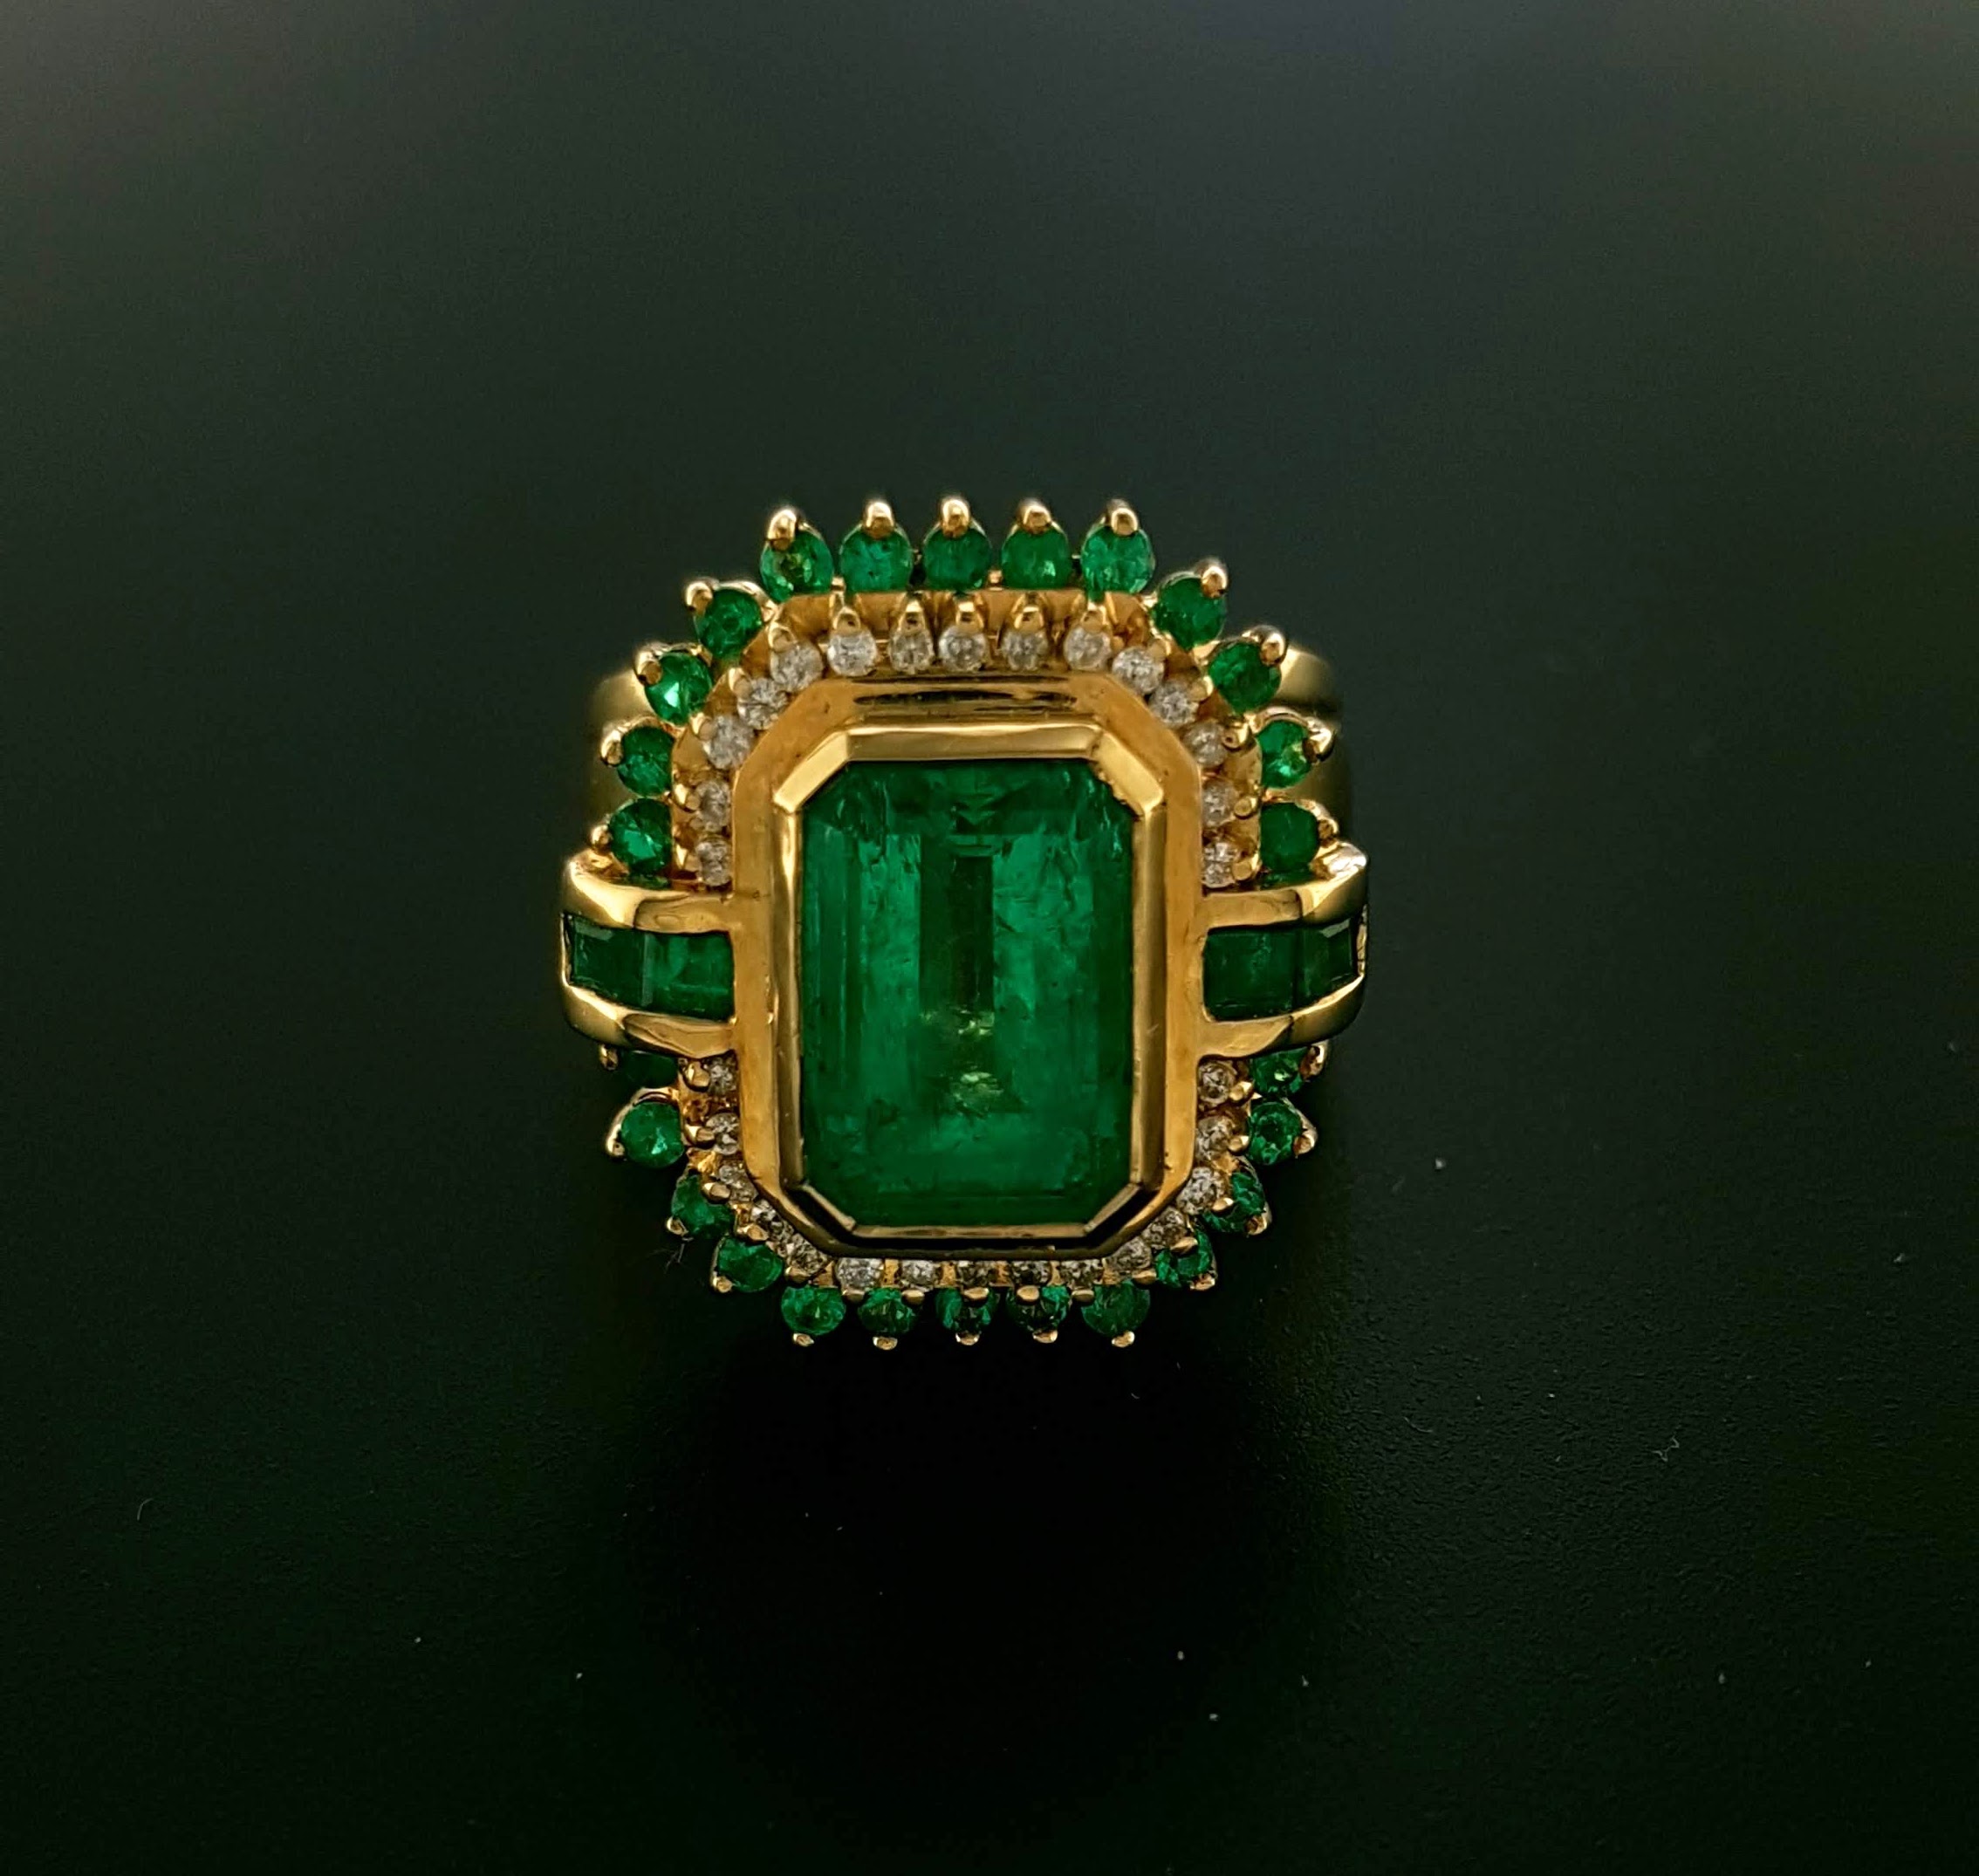 bagage Zich voorstellen Verrijken 18 karaat gouden occasion ring met smaragd en diamantjes #23370 -  Goudsmederij/Juwelier Arnold van Dodewaard